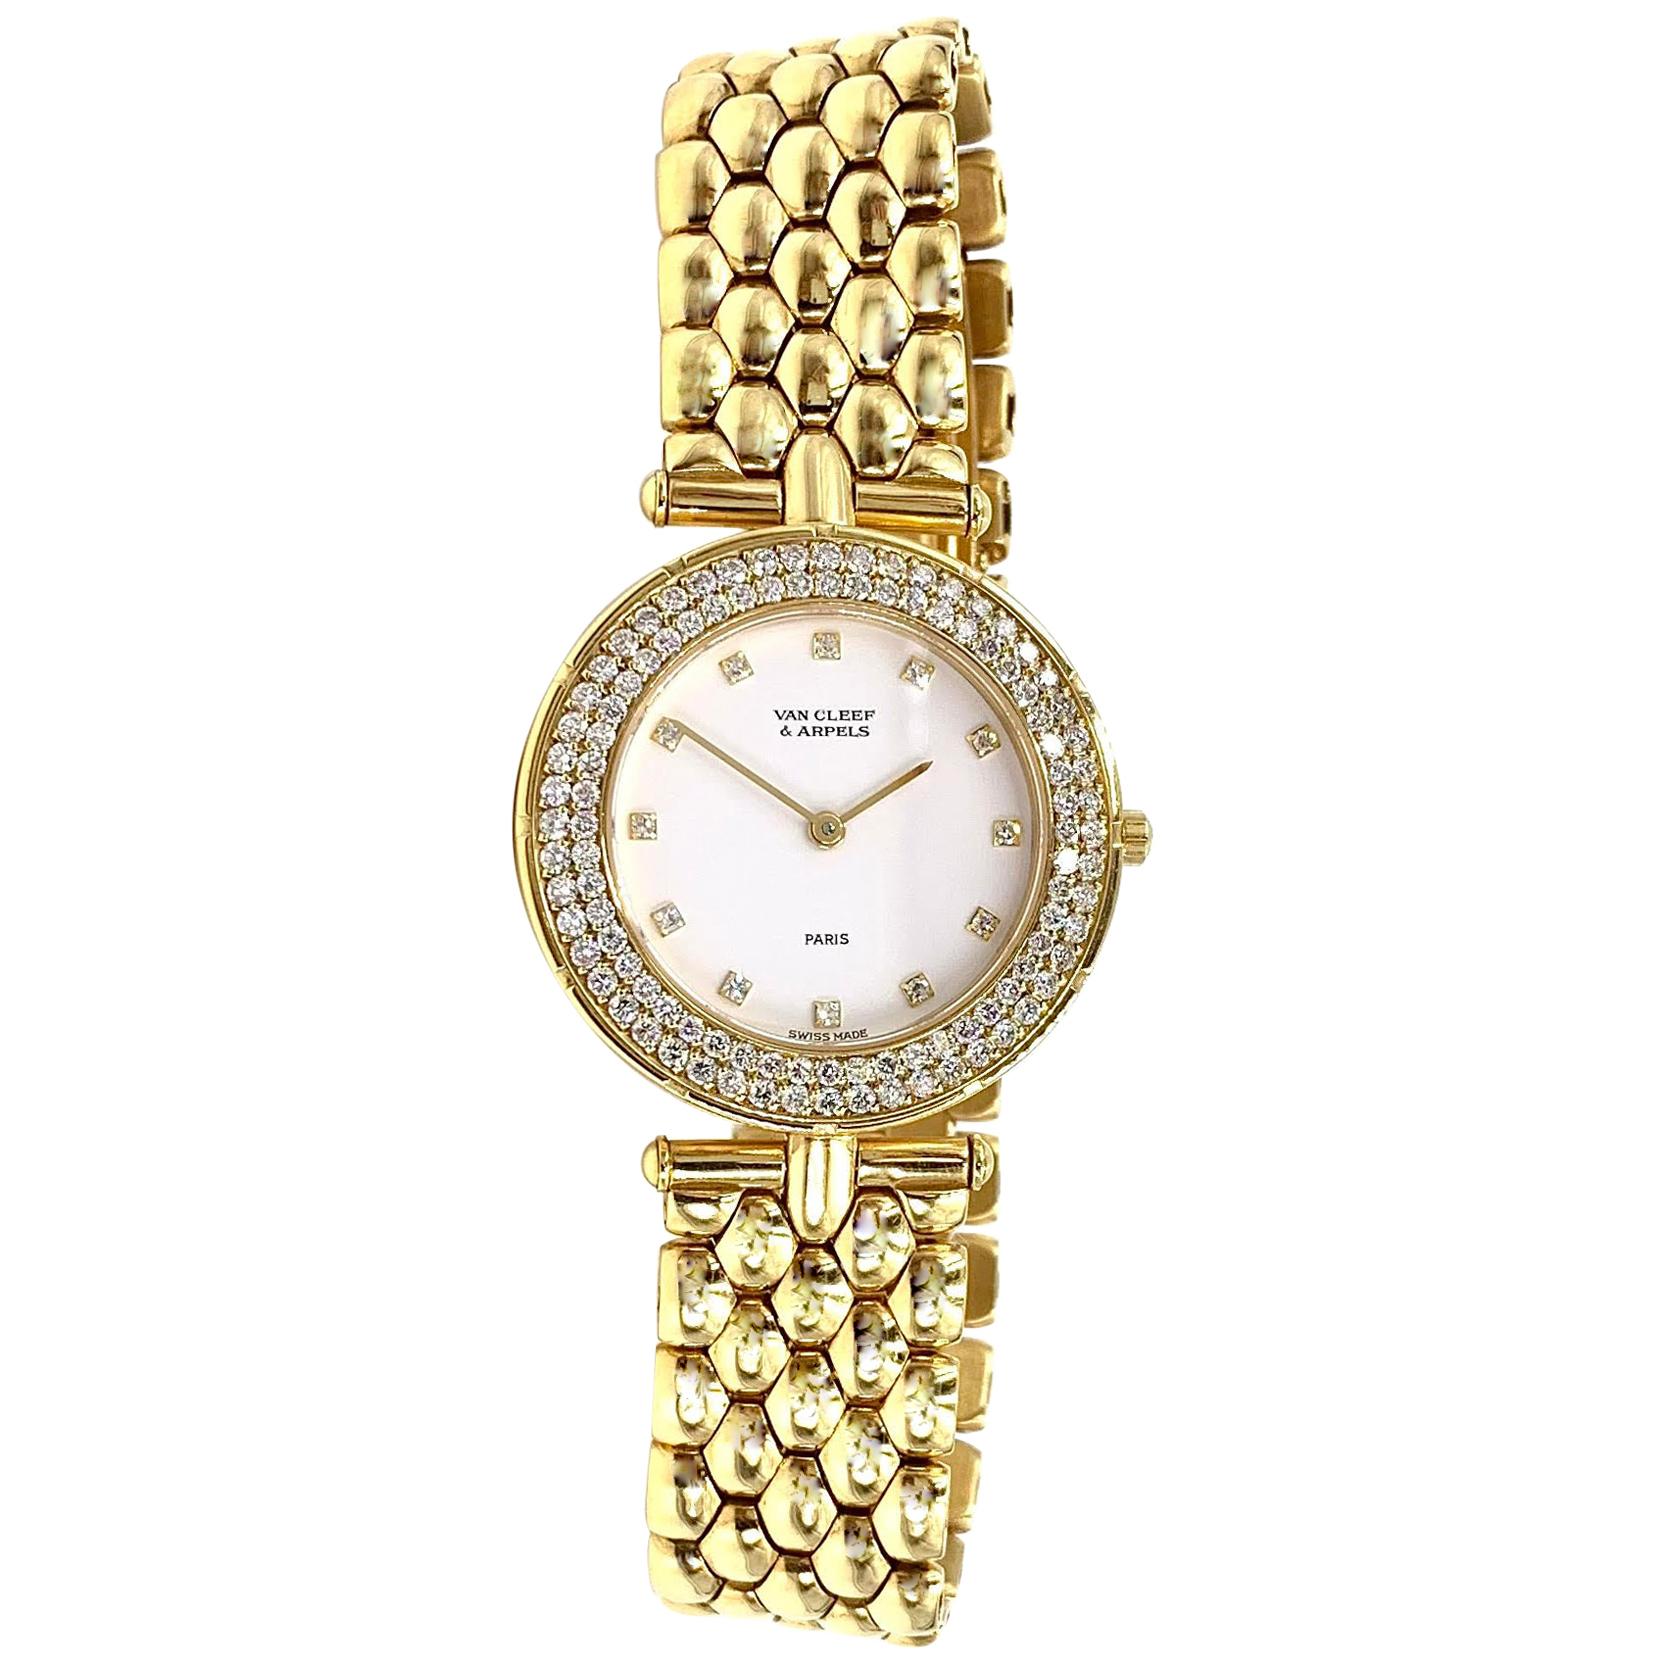 18 Karat Yellow Gold Van Cleef & Arpels Classique Watch with Diamonds